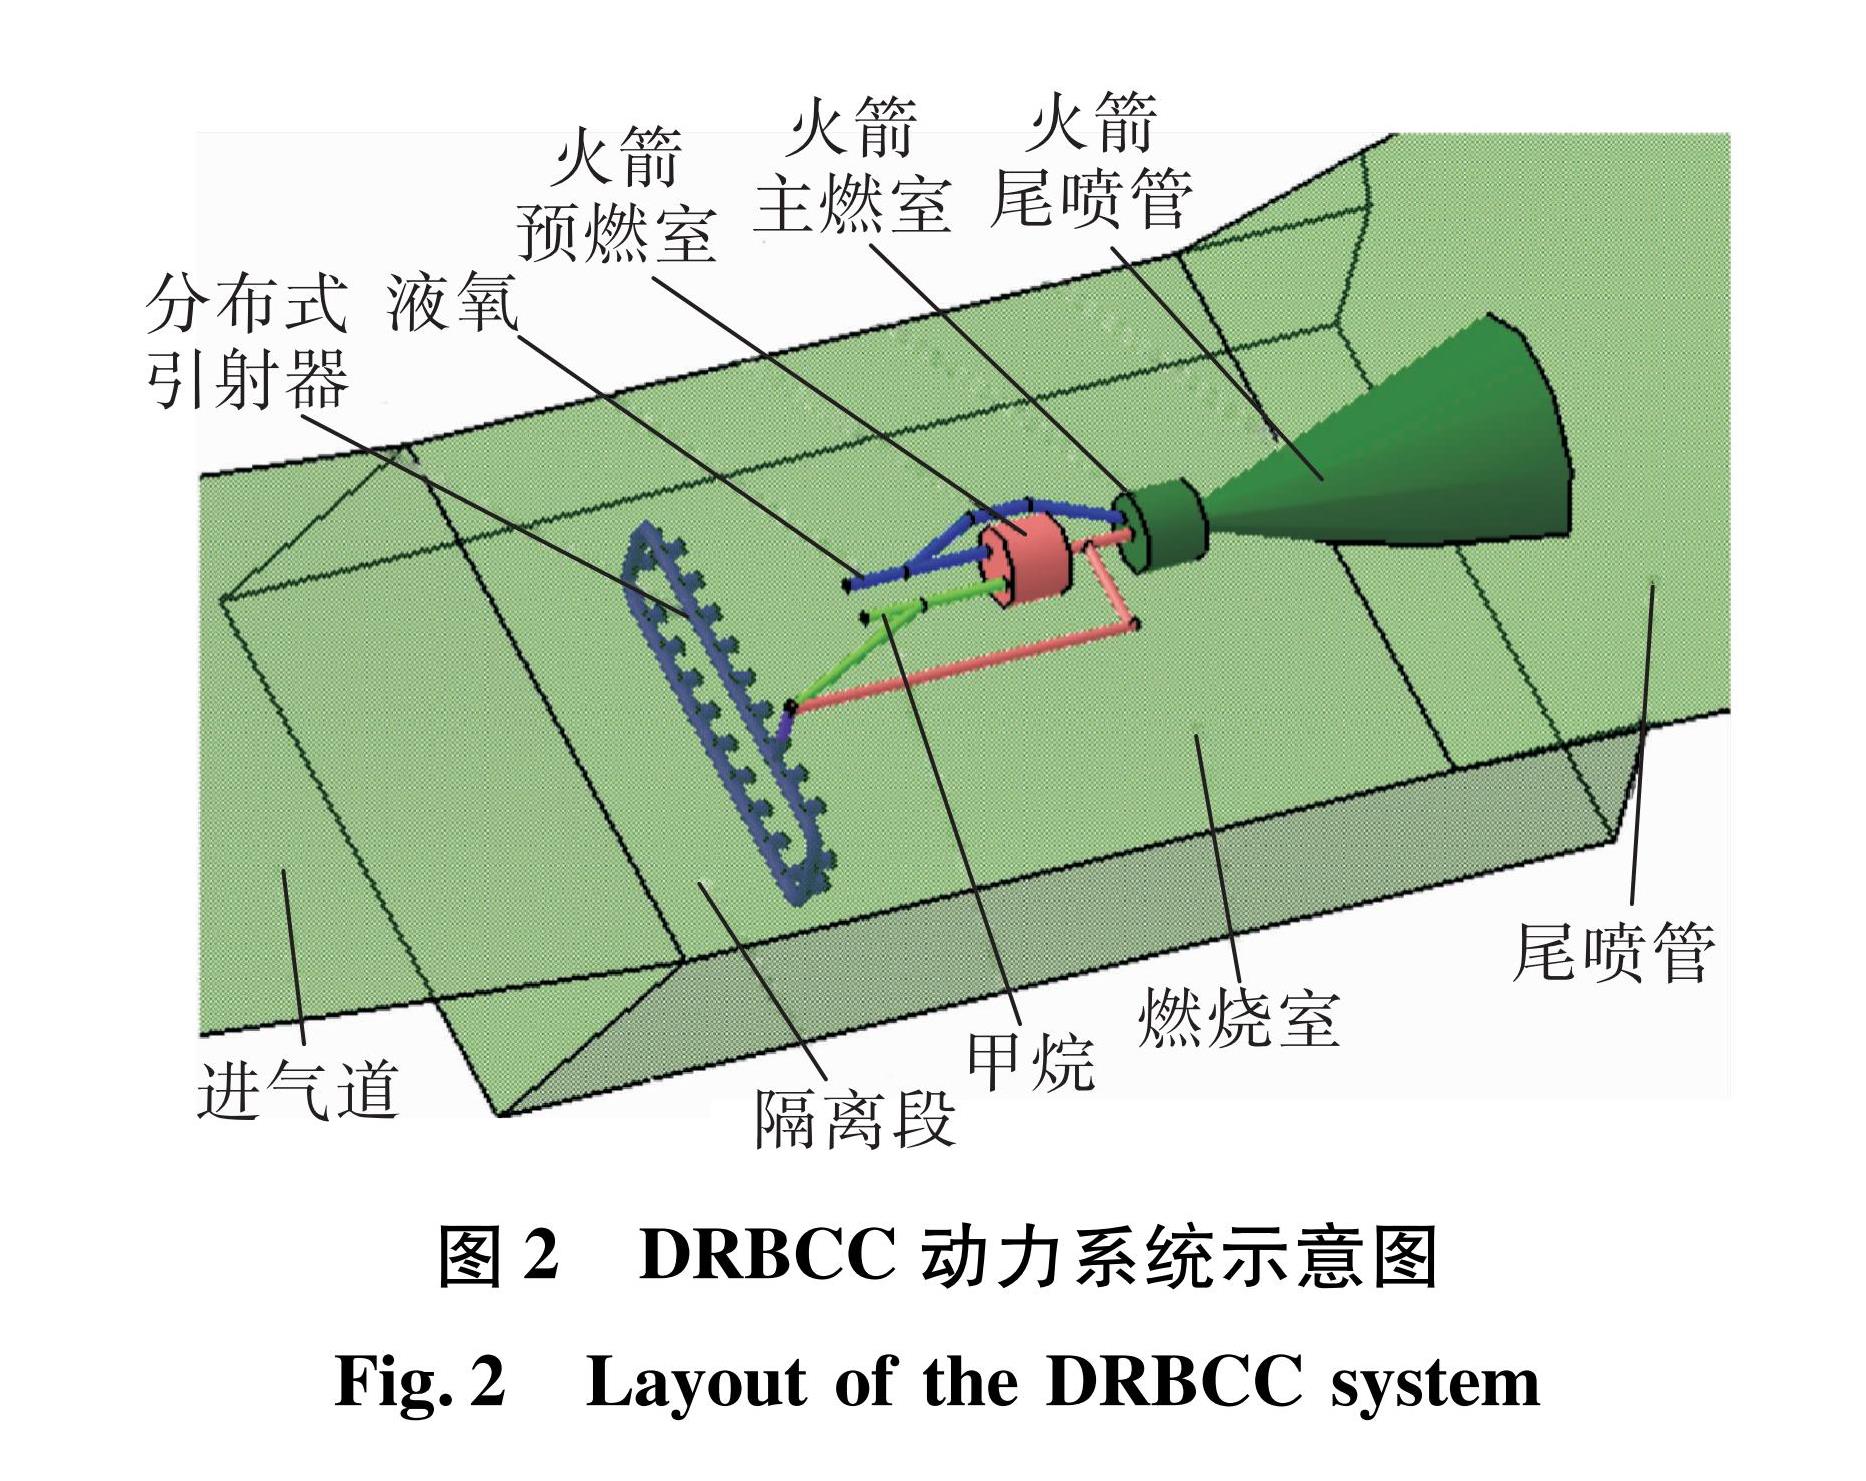 图2 DRBCC动力系统示意图<br/>Fig.2 Layout of the DRBCC system